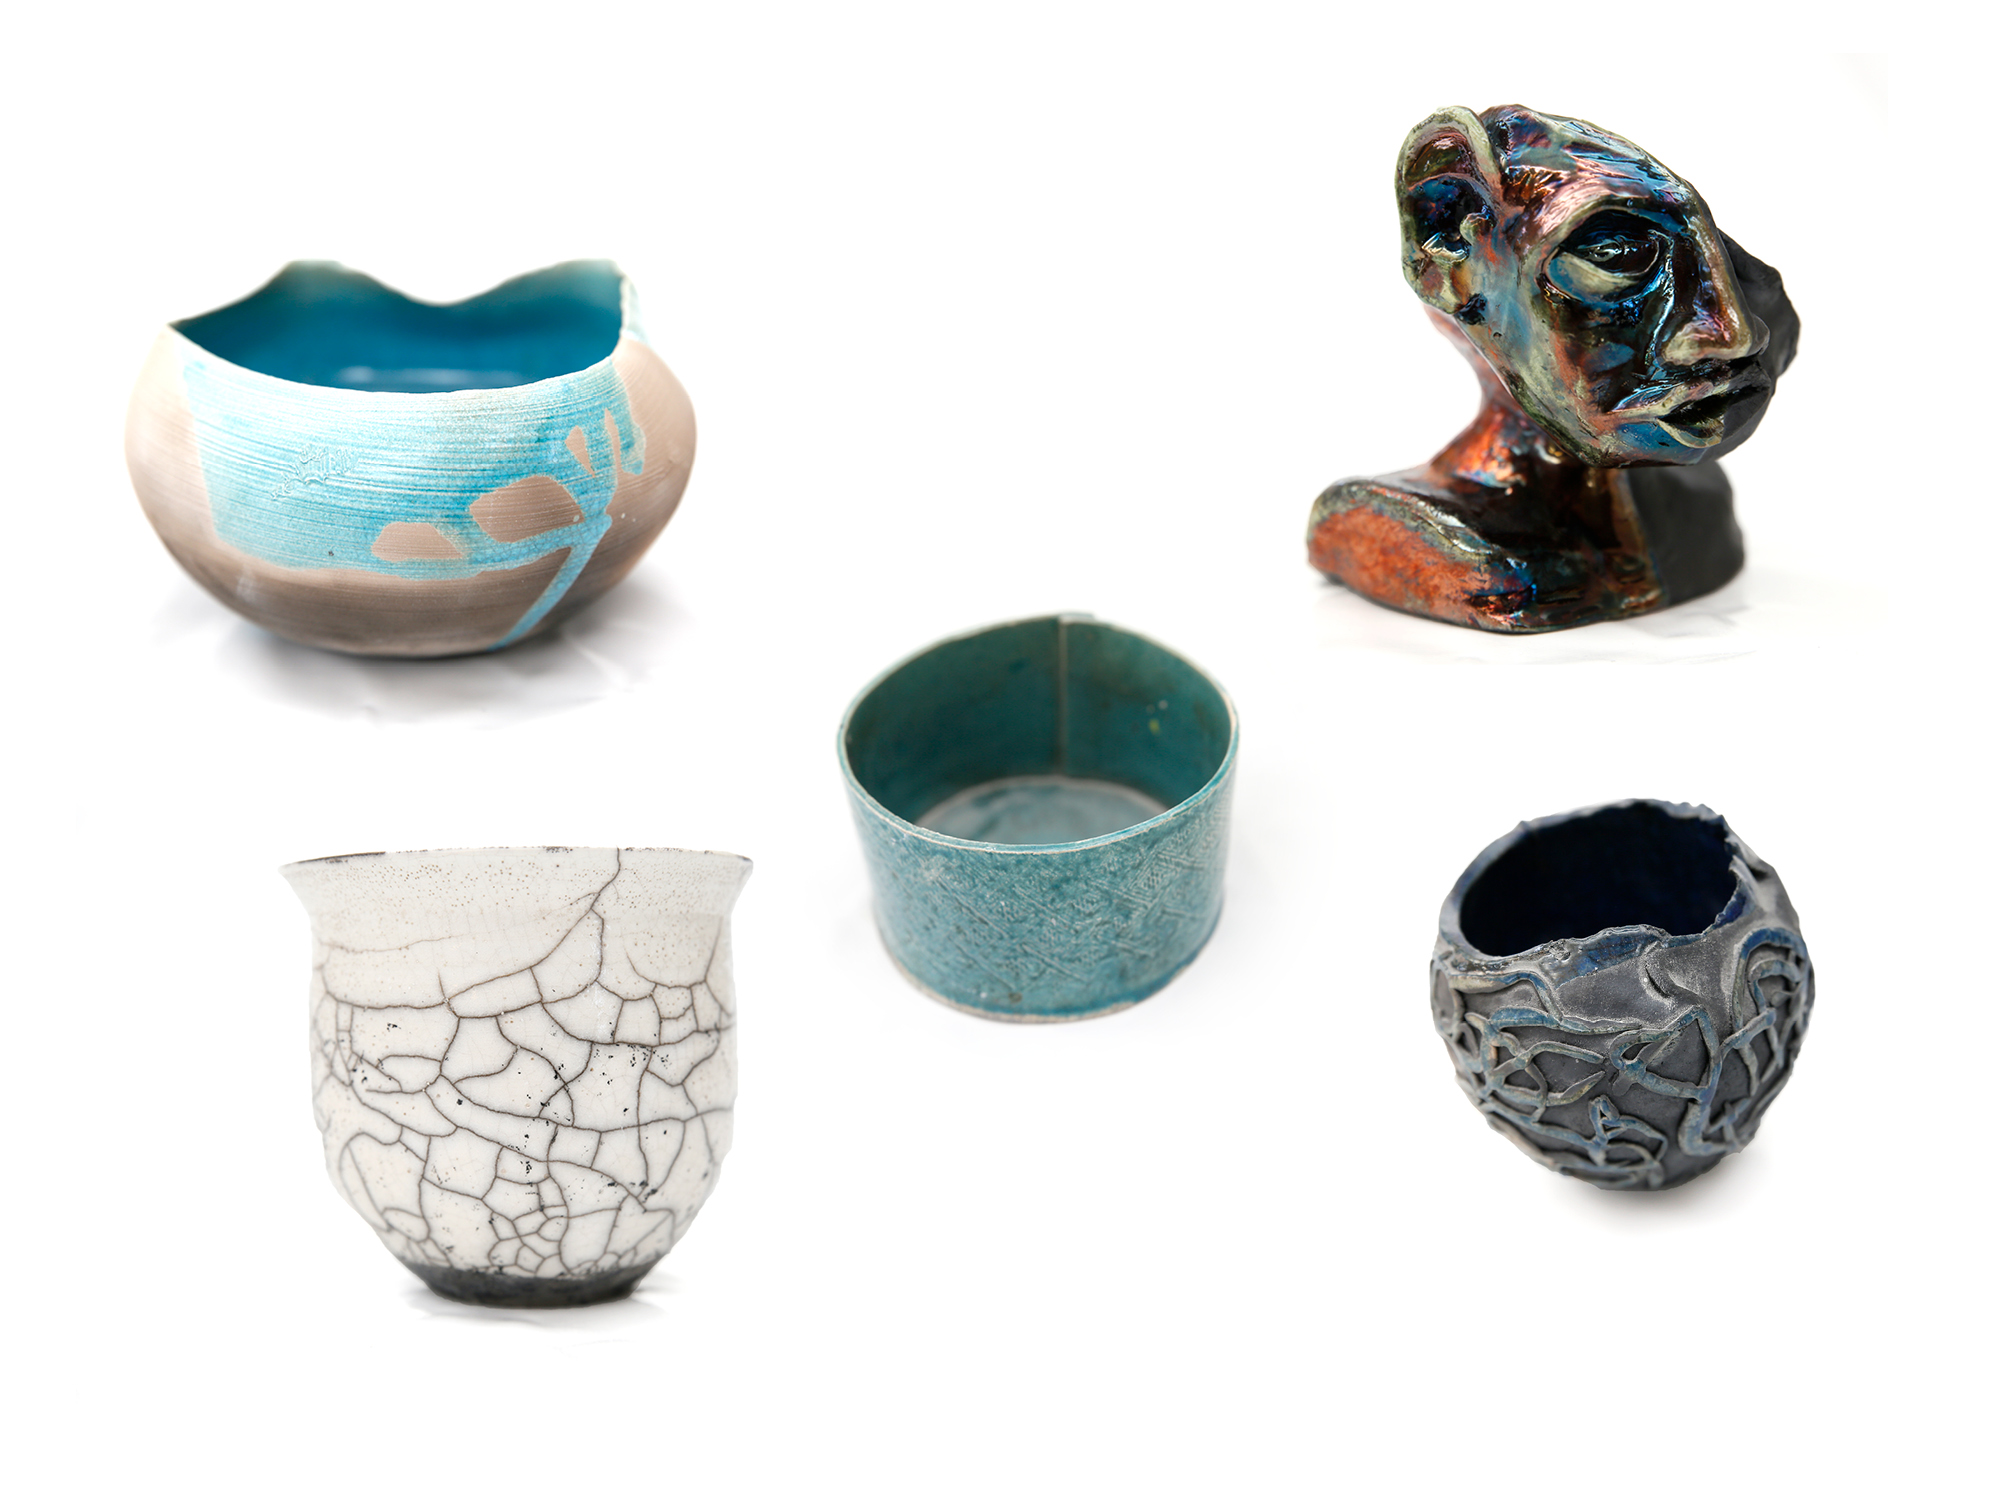 Nogle eksempler på raku-keramik.